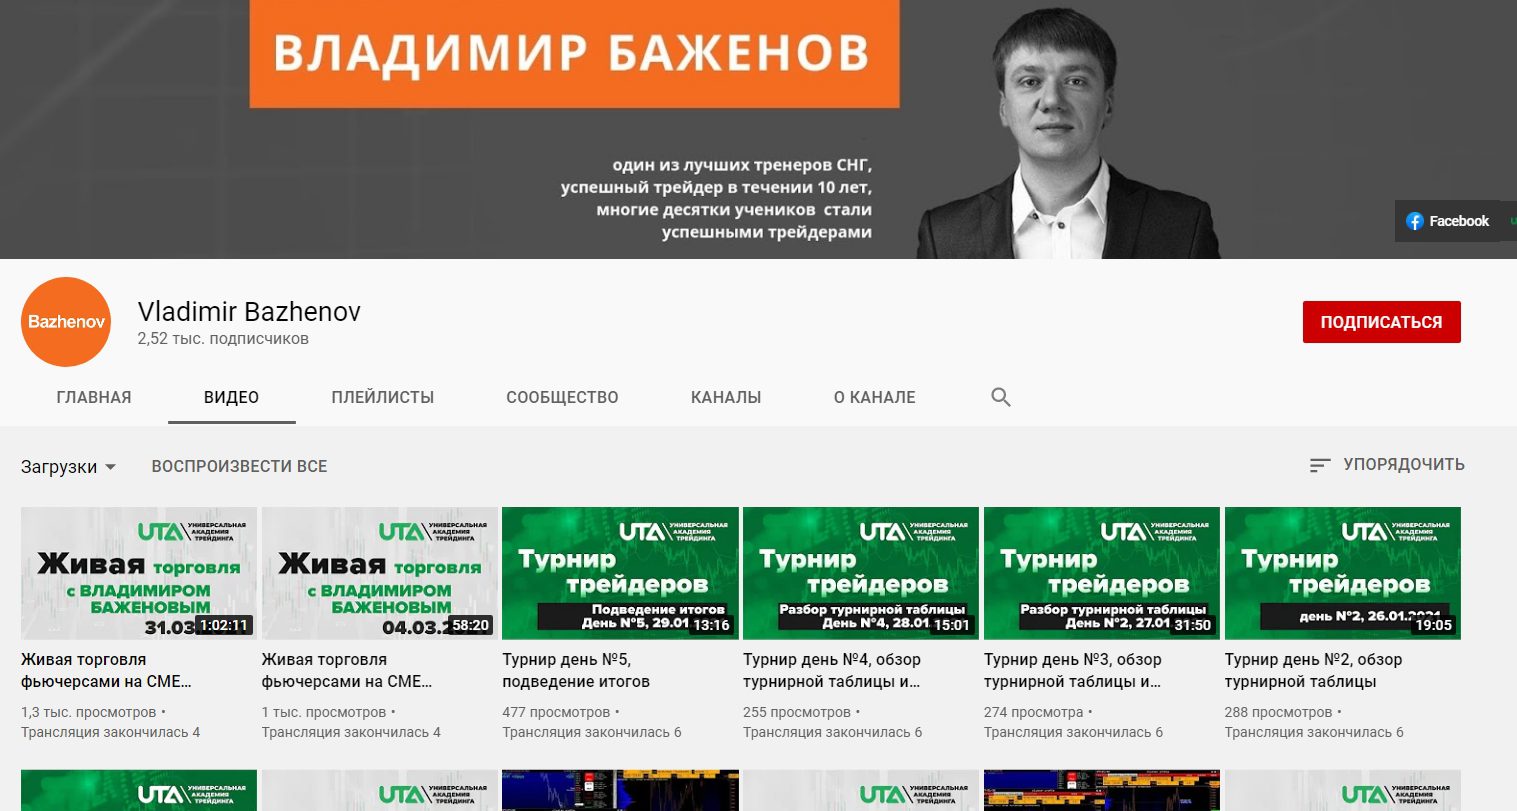 Ютуб канал Владимира Баженова